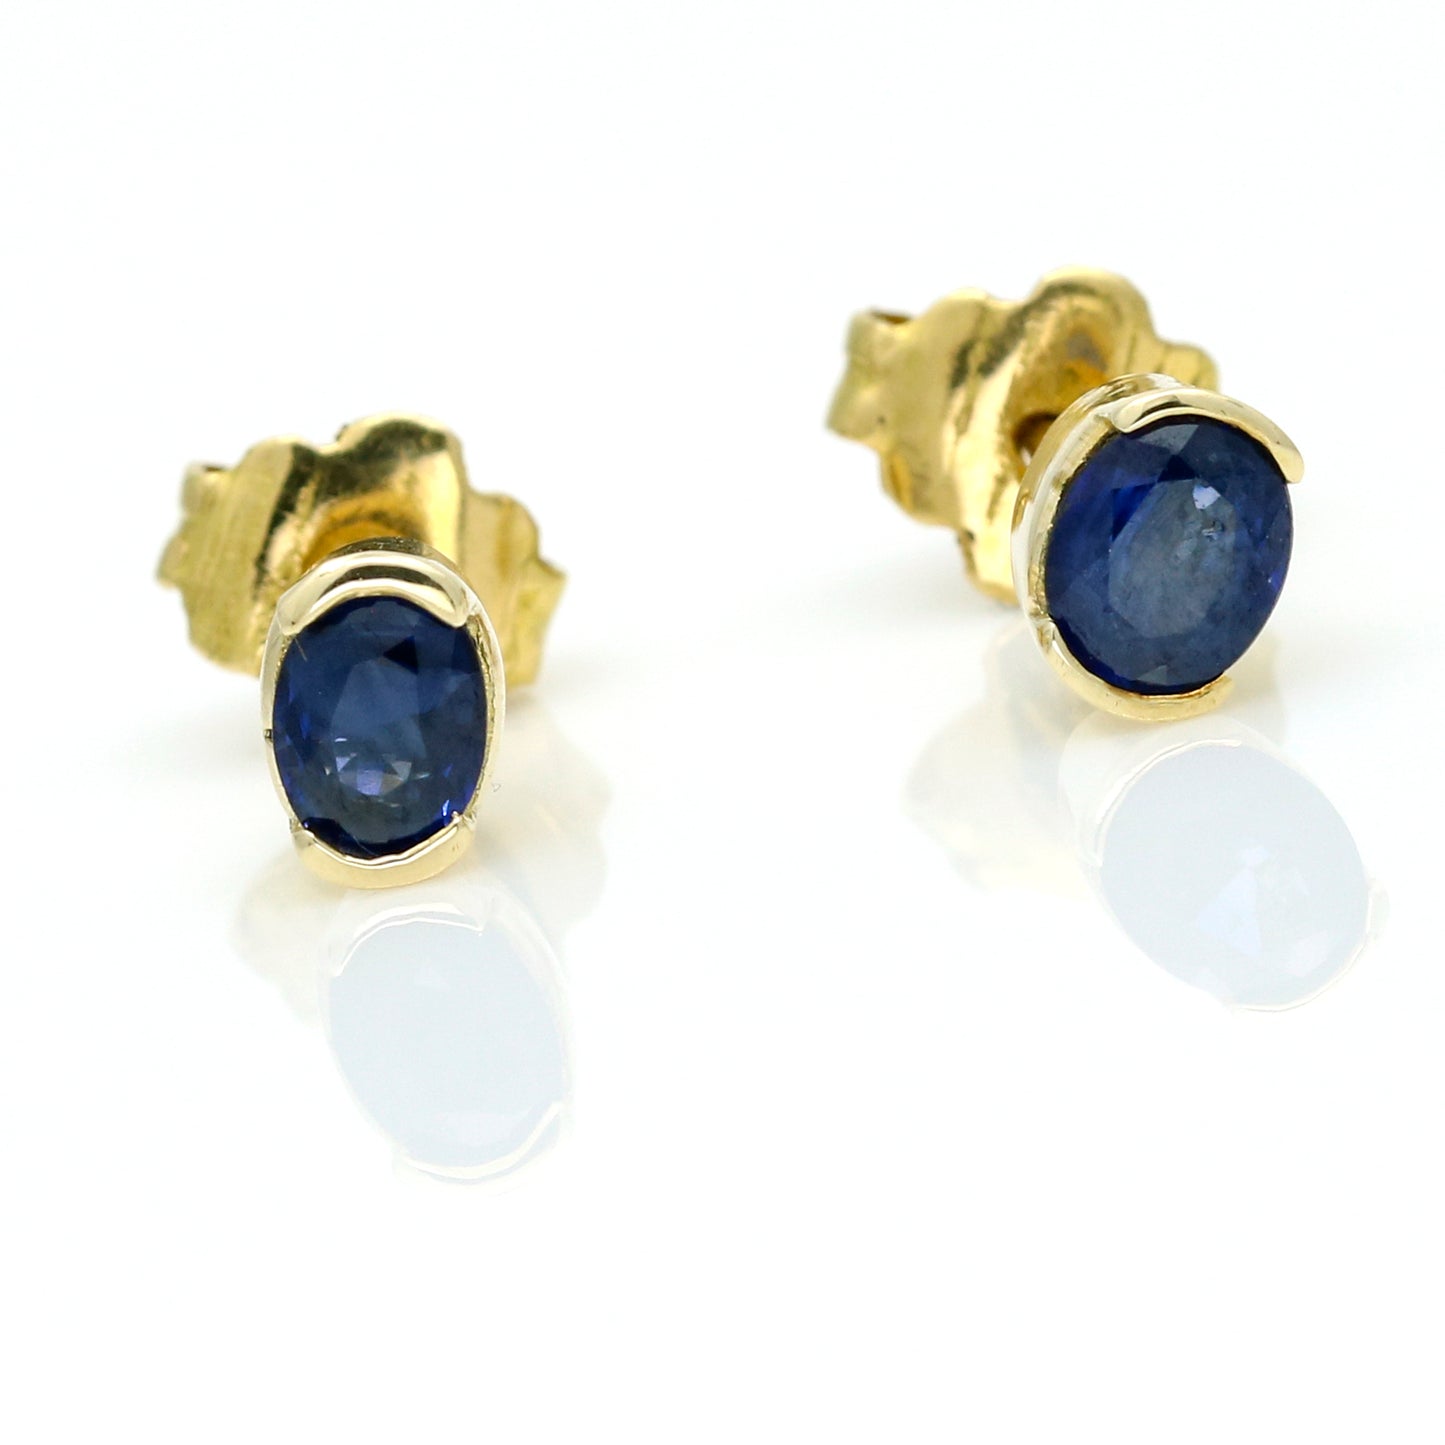 Oval Blue Sapphire Stud Earrings in 14k Yellow Gold